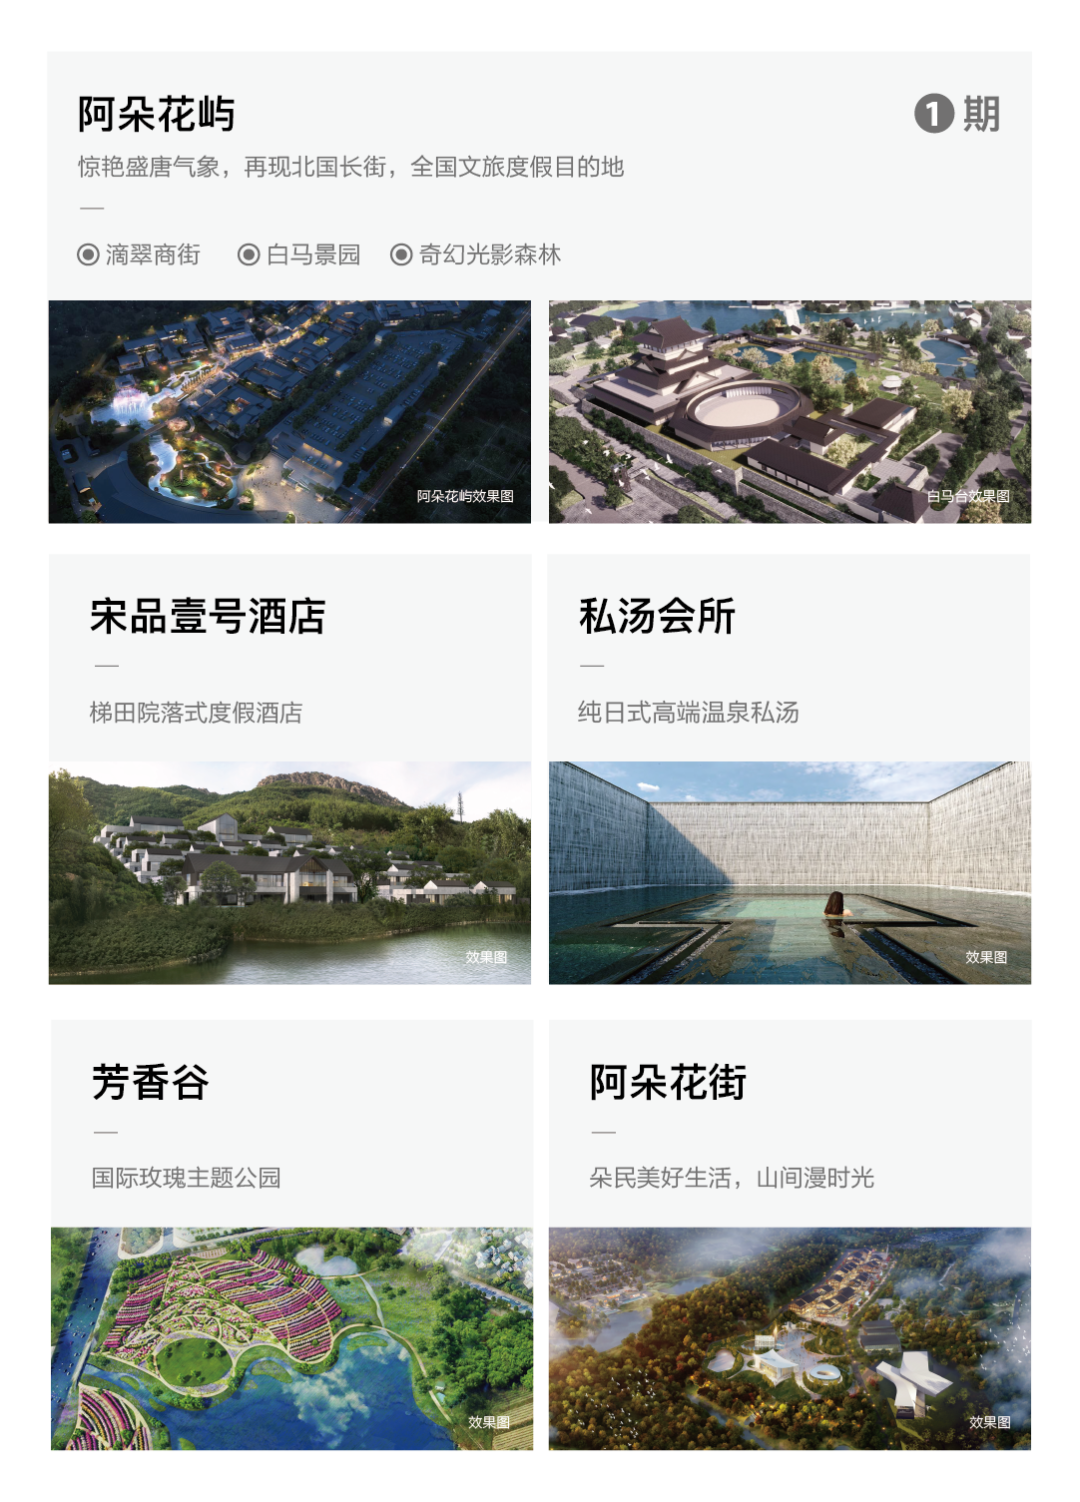 阿朵花街正式发布|融创•阿朵小镇全新旅居生活 美好启程-中国网地产